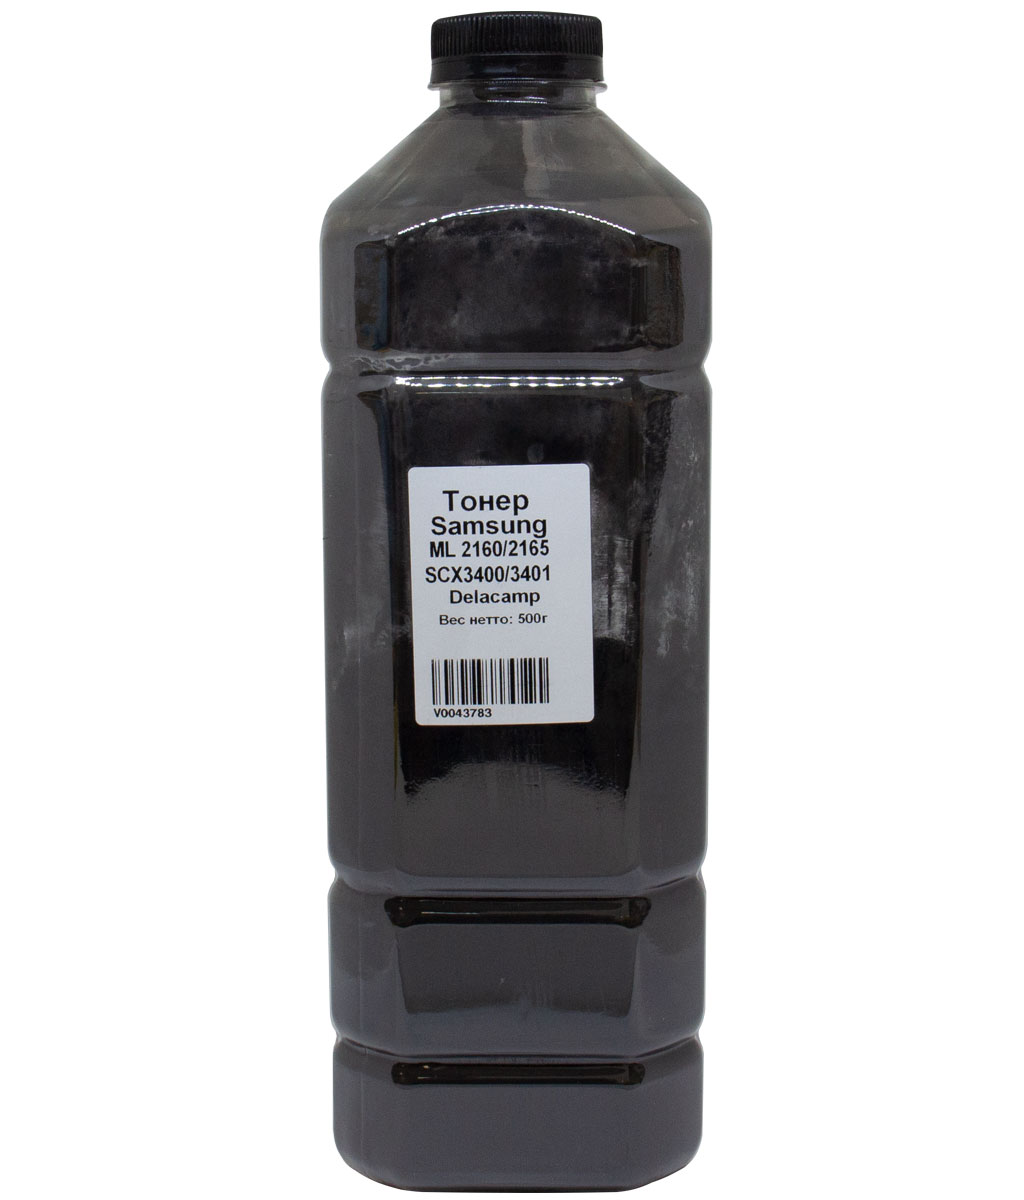 Тонер Delacamp, бутыль 500 г, черный, совместимый для Samsung ML-2160/2165, SCX-3400/3401 (V0043783)